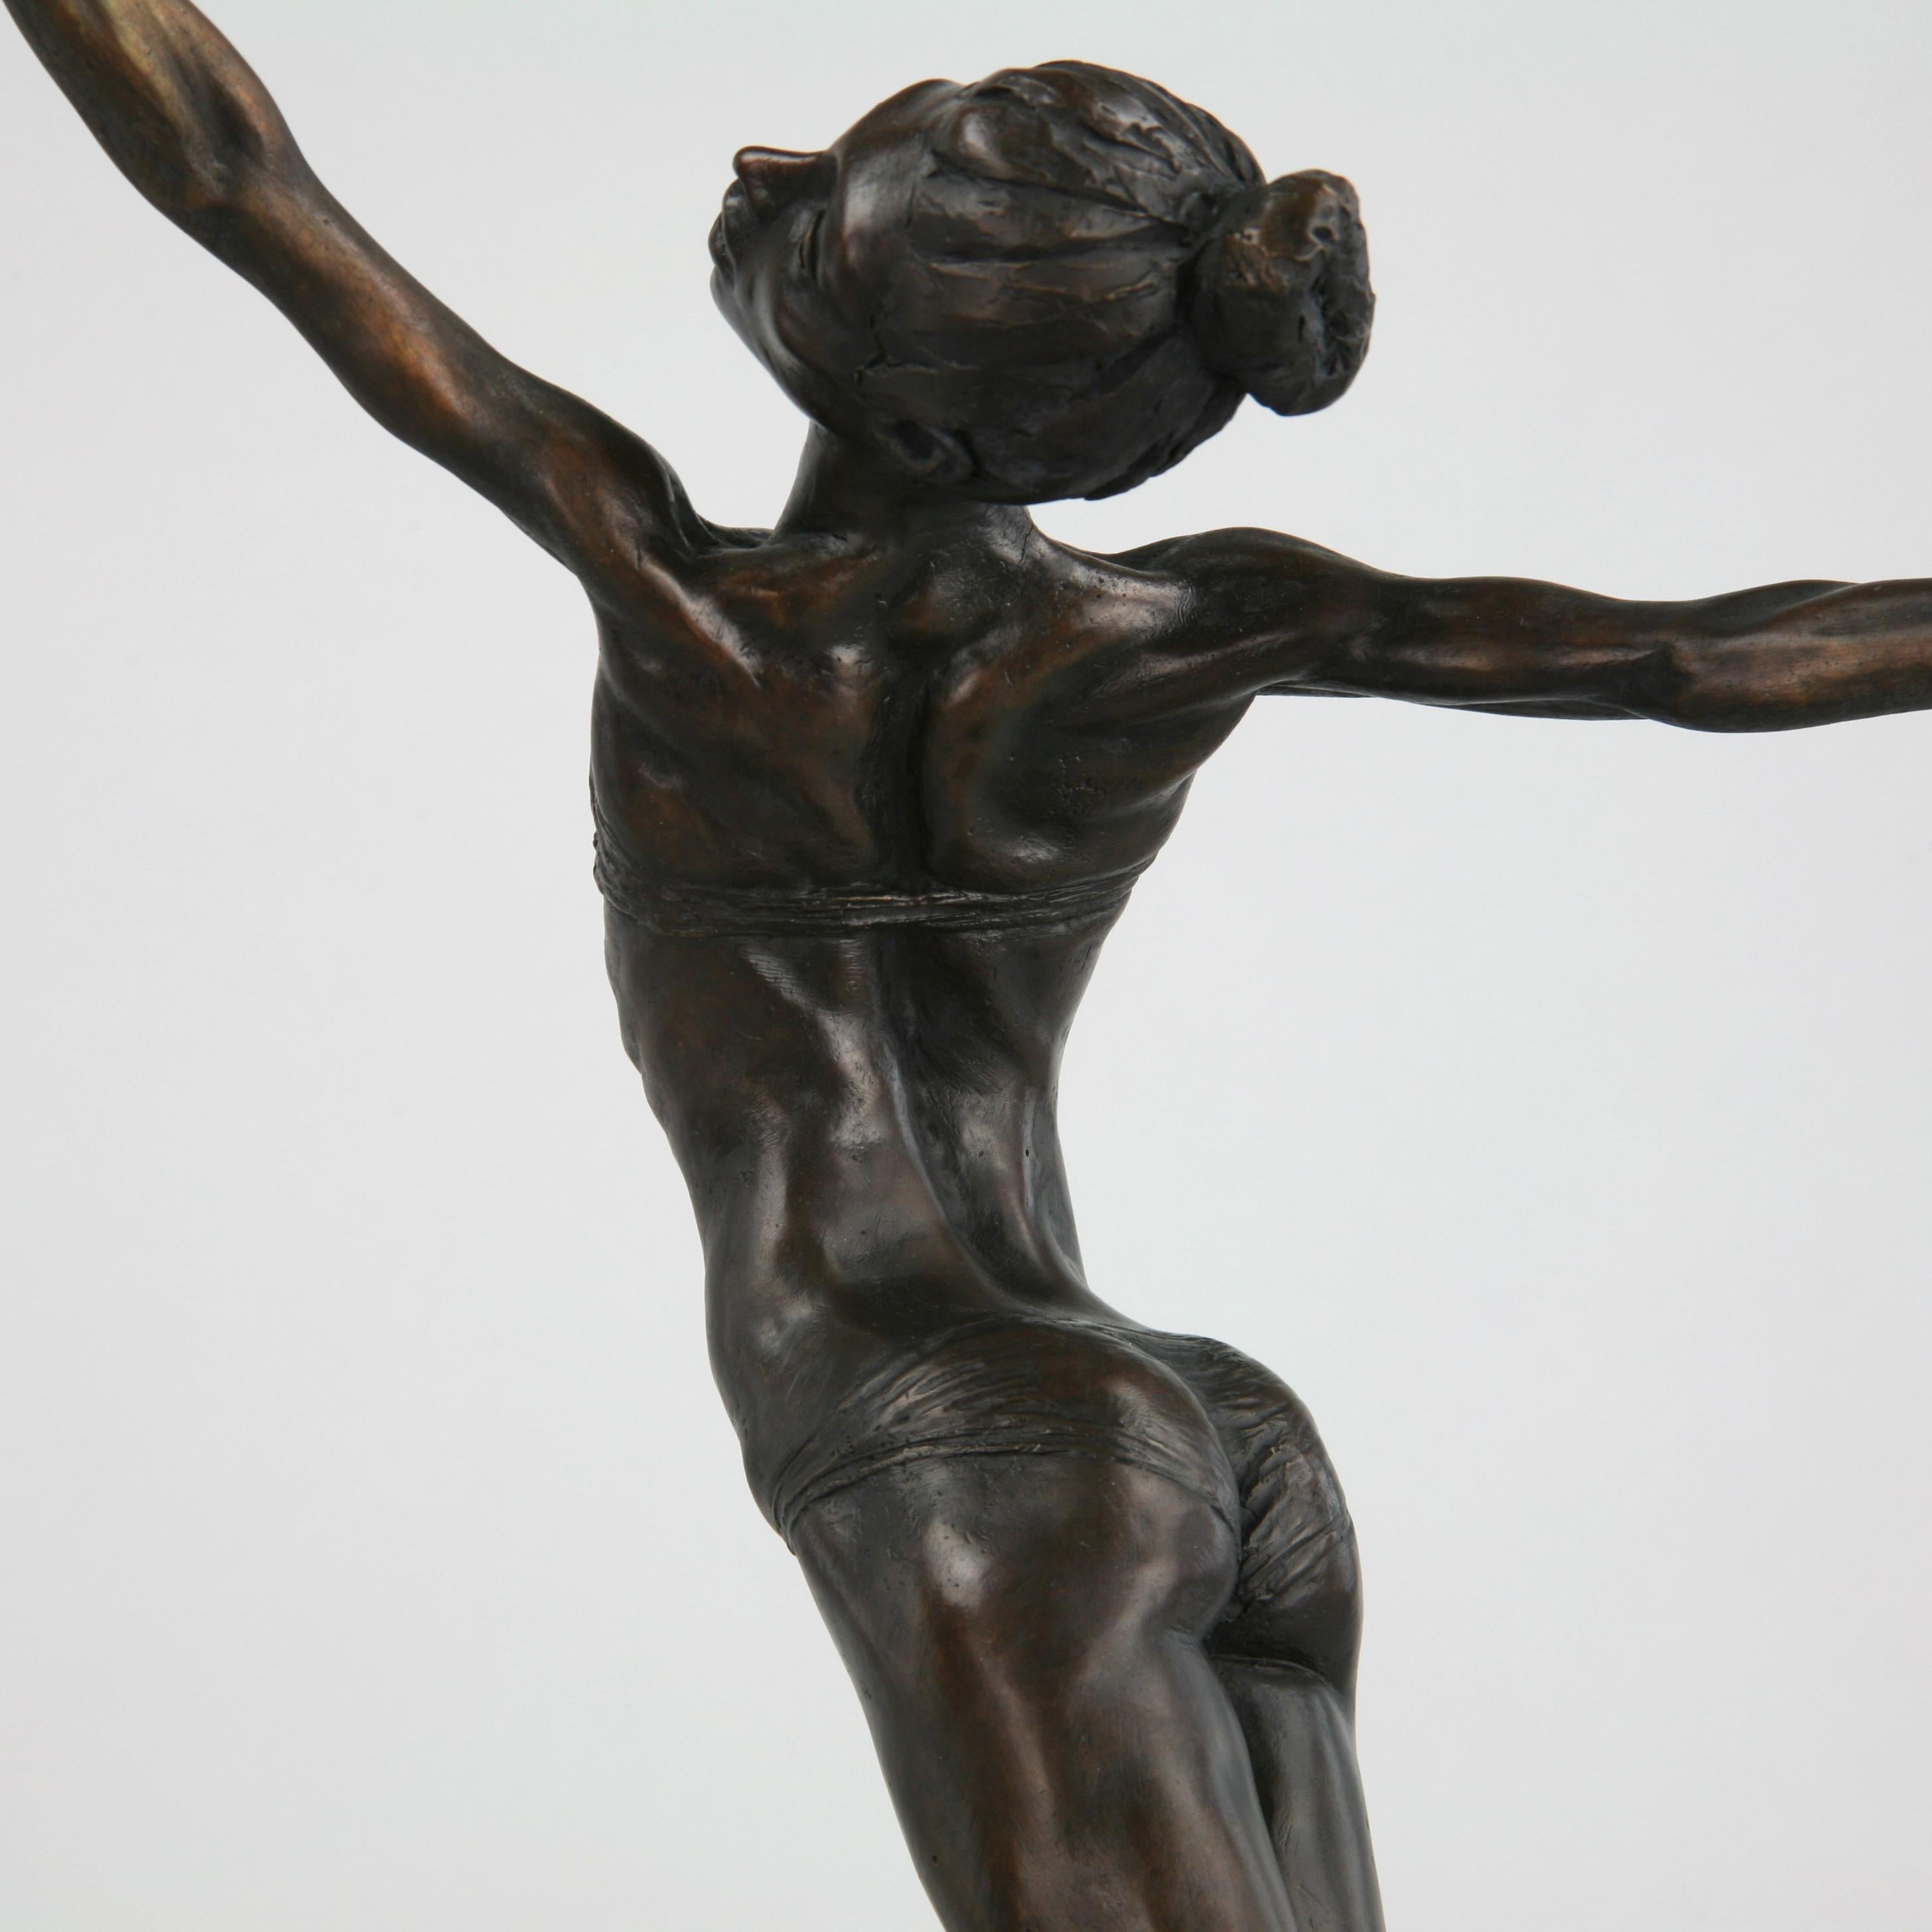 Pole Dancer-originale figurative Akt-Bronze-Skulptur-Kunstwerk-Zeitgenössische Kunst (Realismus), Sculpture, von Andrzej Szymczyk